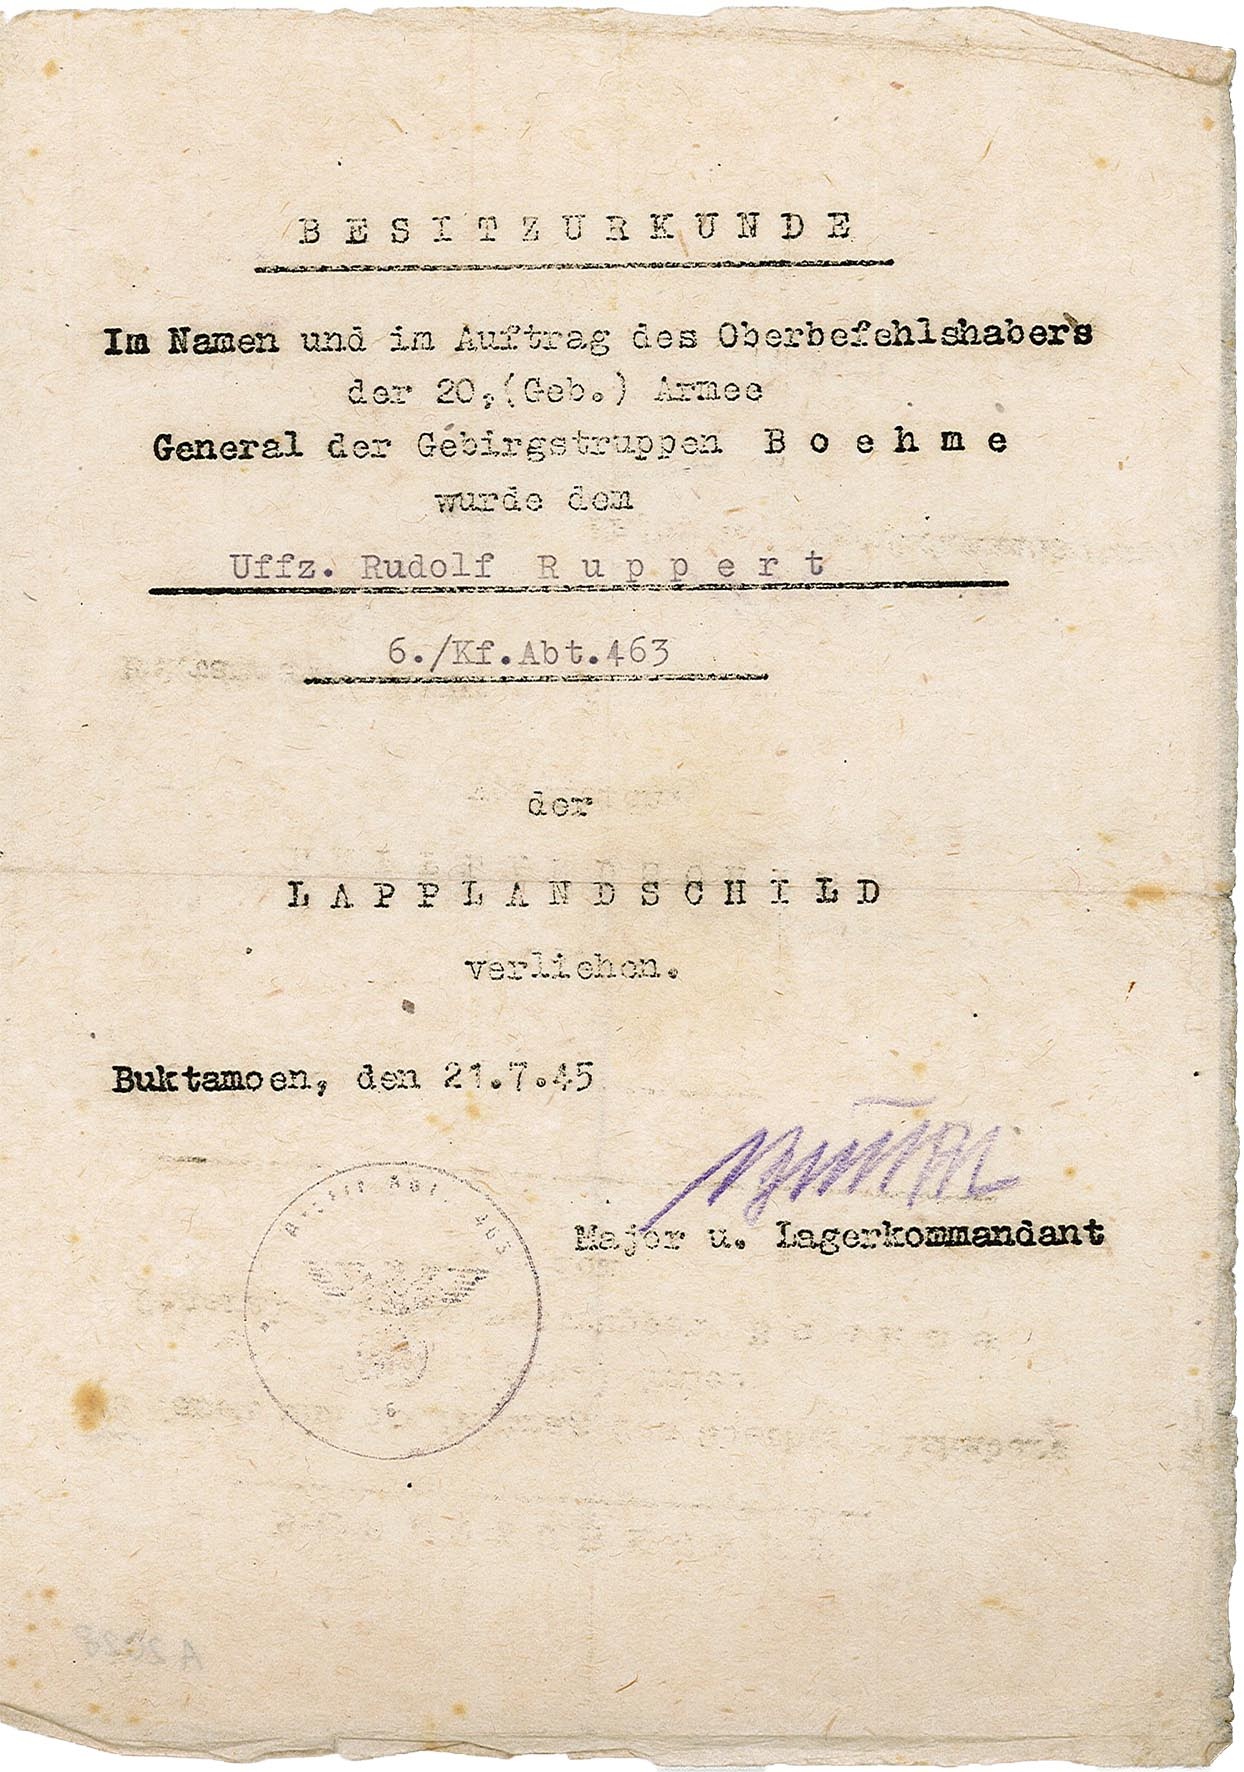 Urkunde zur Verleihung des Lapplandschildes an Rudolf Ruppert, 21.07.1945 (Museum Wolmirstedt RR-F)